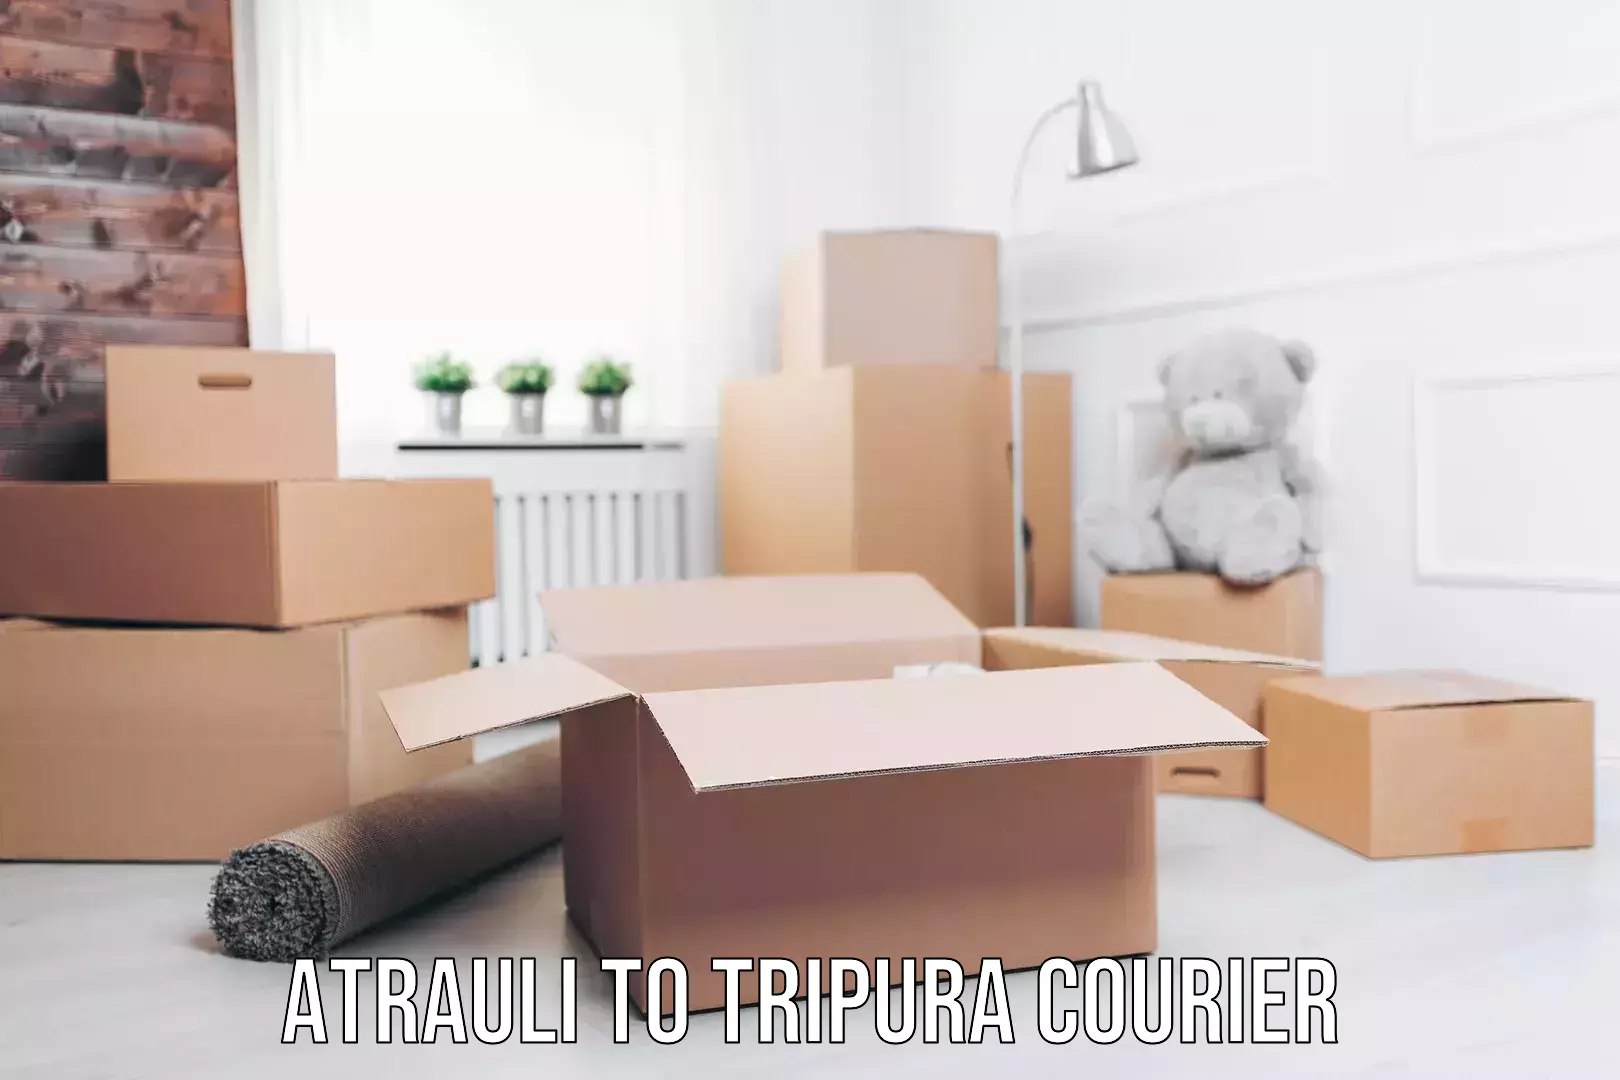 Flexible courier rates Atrauli to Tripura